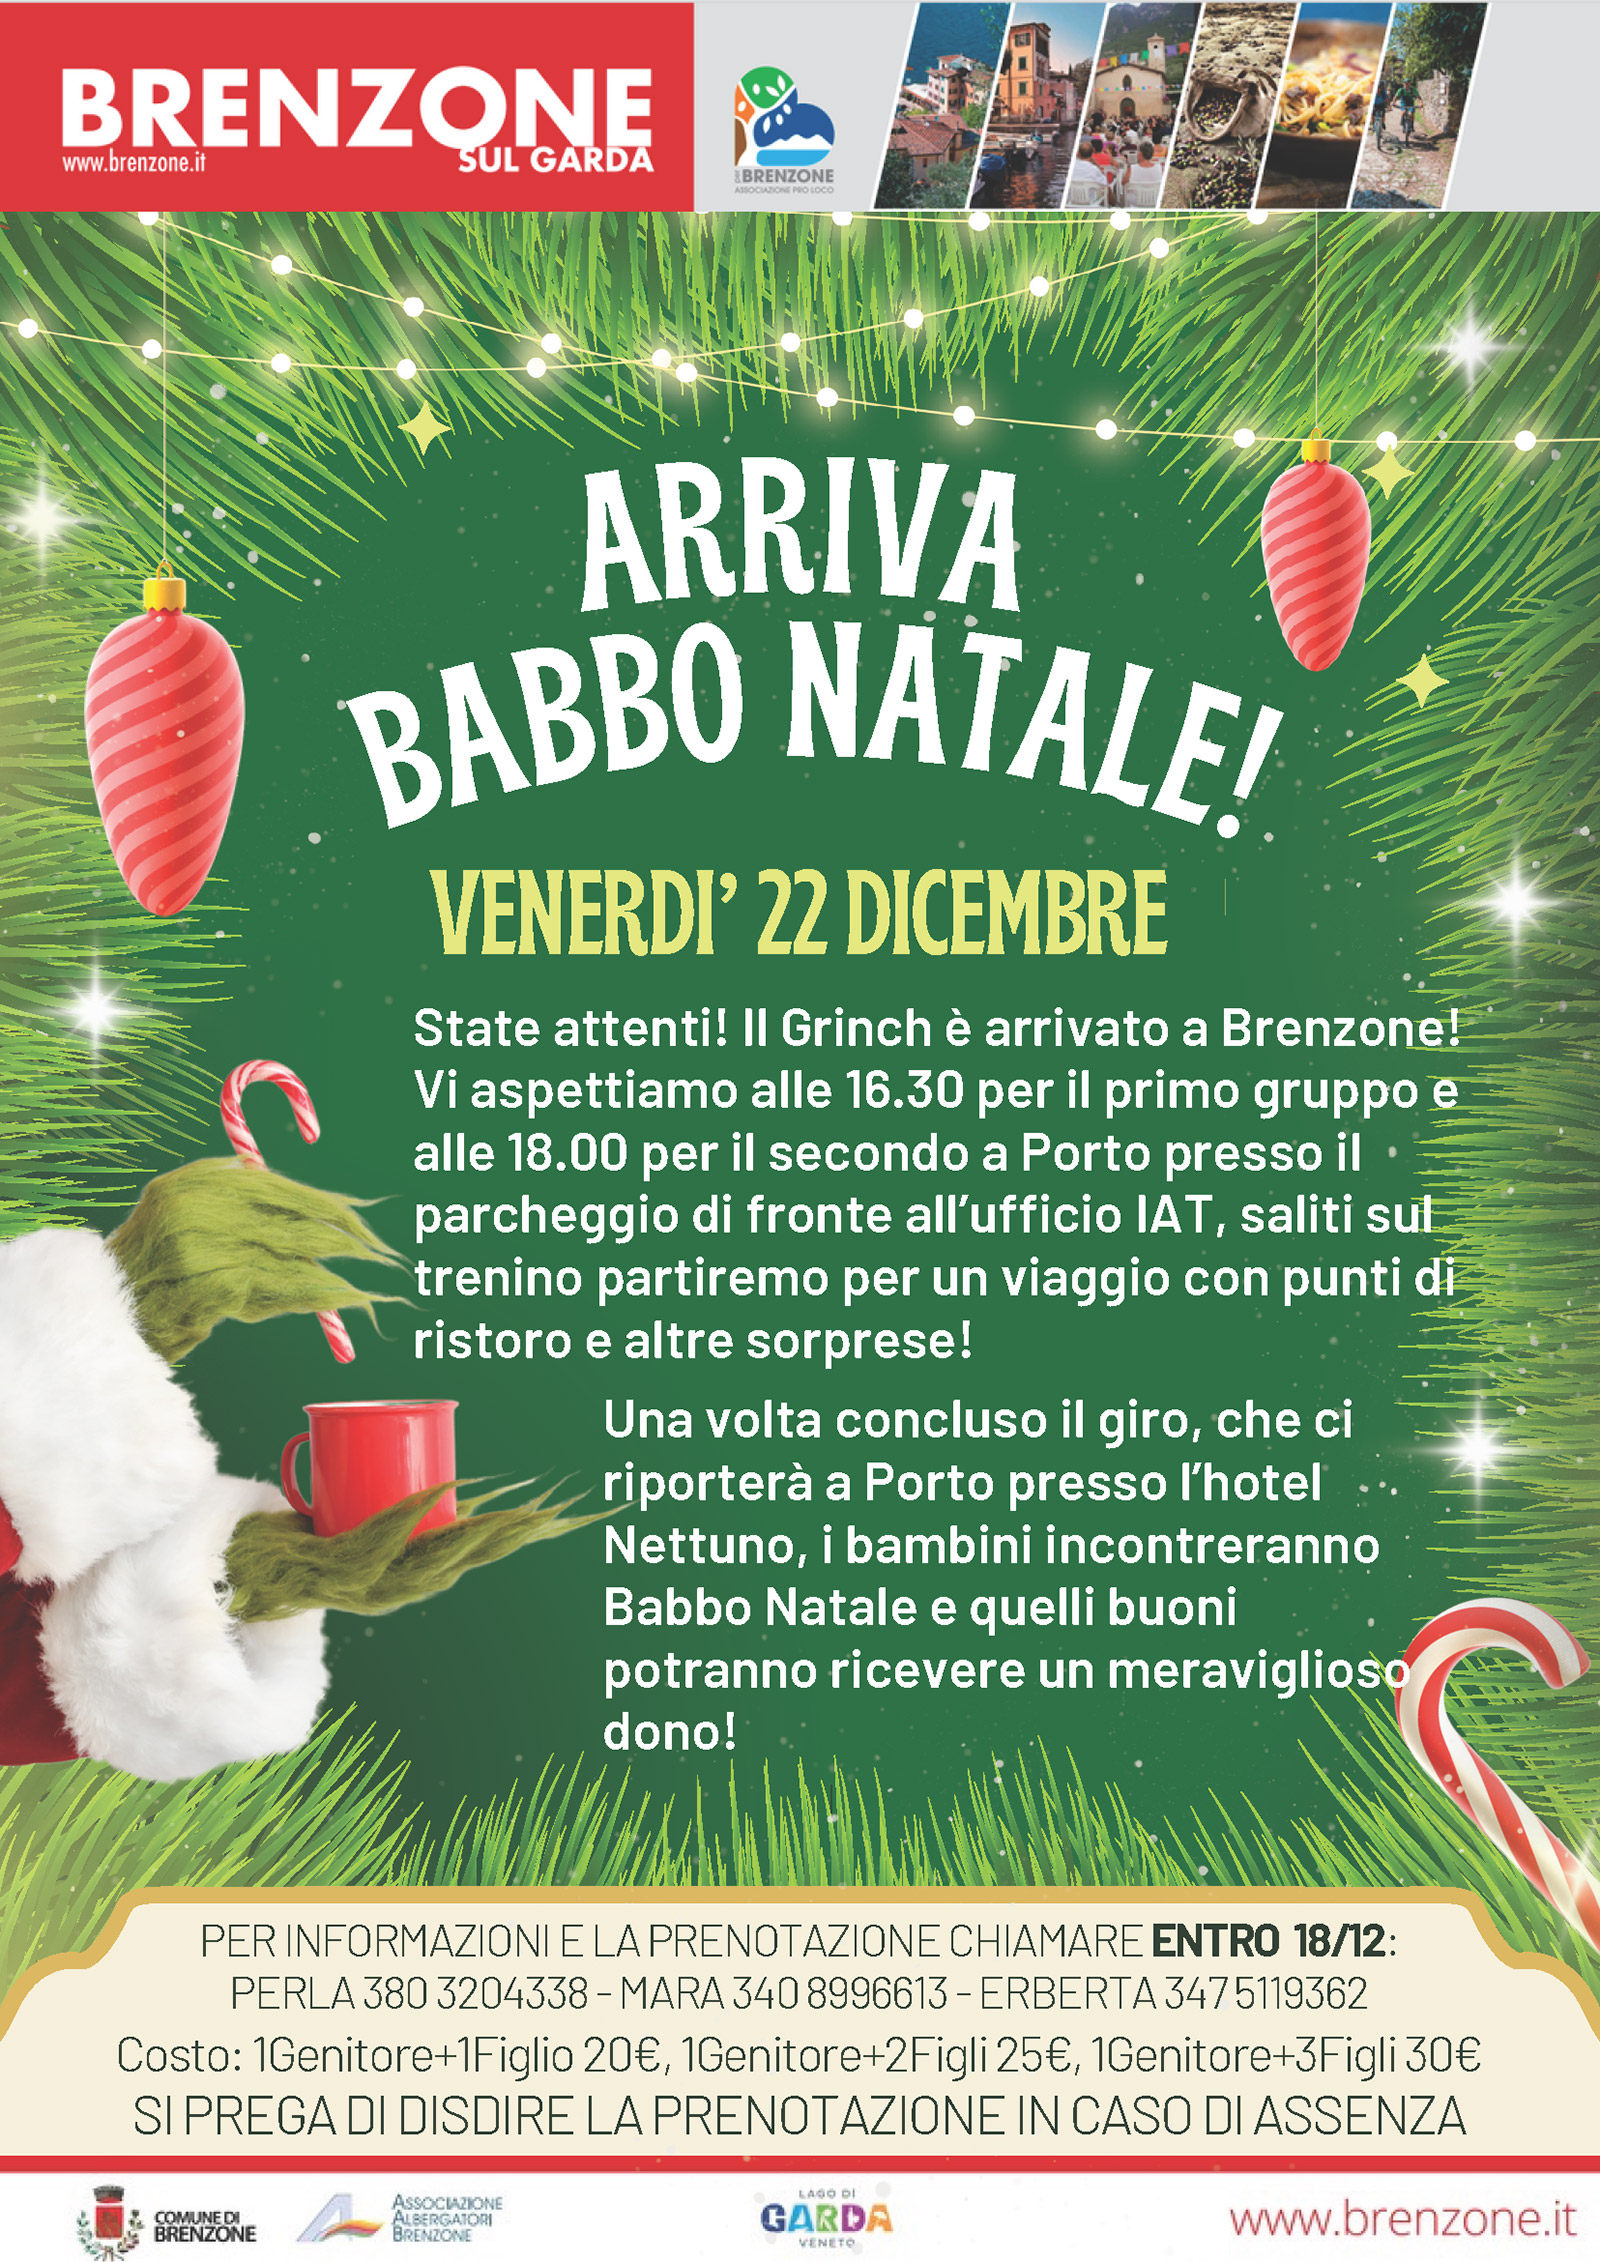 Arriva Babbo Natale! - Der Weihnachtsmann kommt! - Santa Claus is coming!